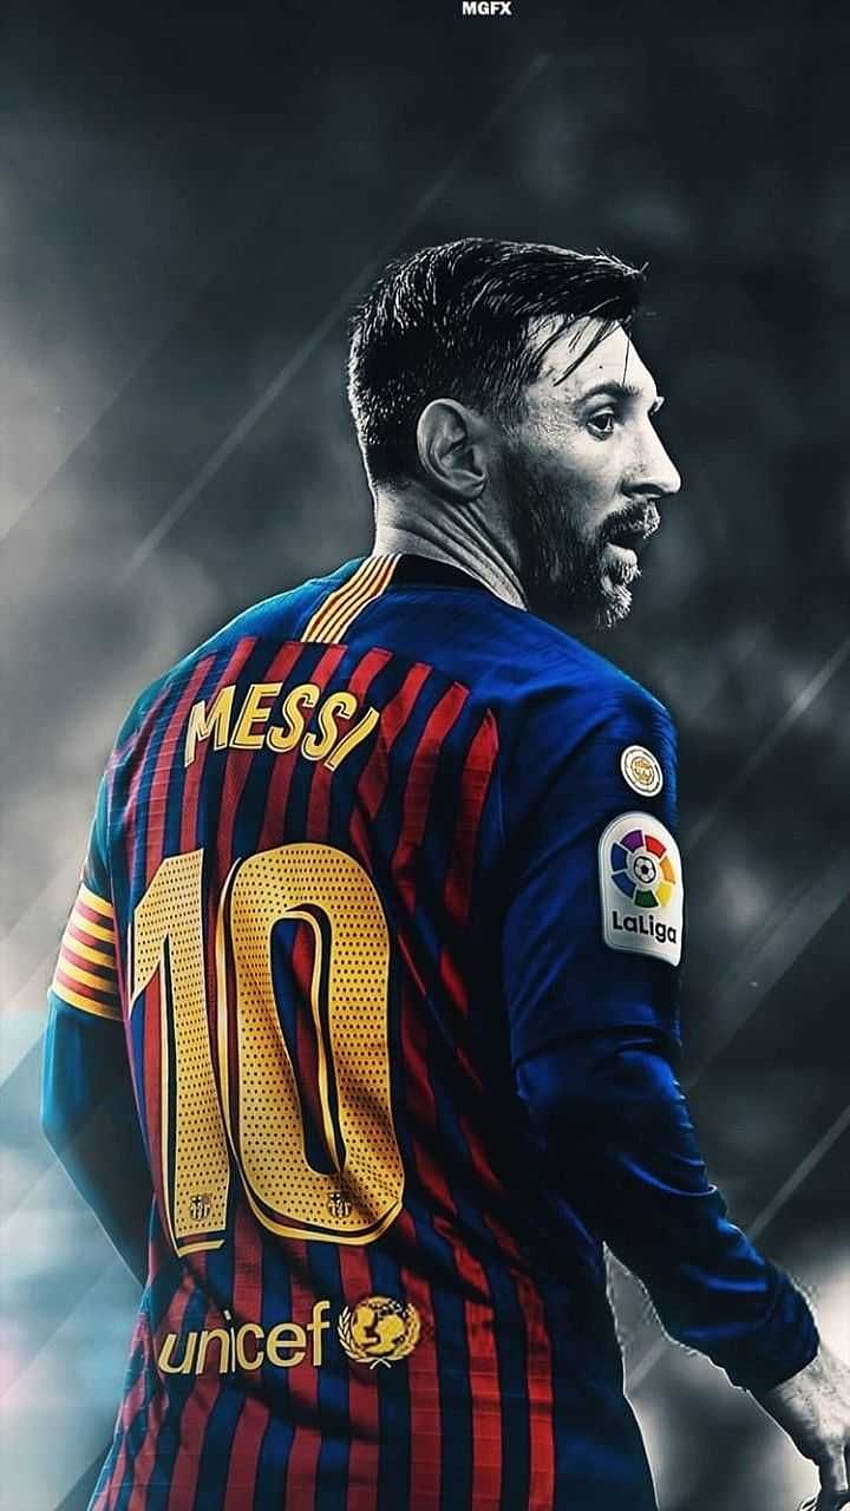 Với những kỹ năng phi thường và tài năng thiên bẩm, Lionel Messi xứng đáng được coi là một trong những siêu sao bóng đá hàng đầu thế giới. Đừng bỏ lỡ cơ hội thưởng thức hình ảnh của anh ấy trên sân cỏ.